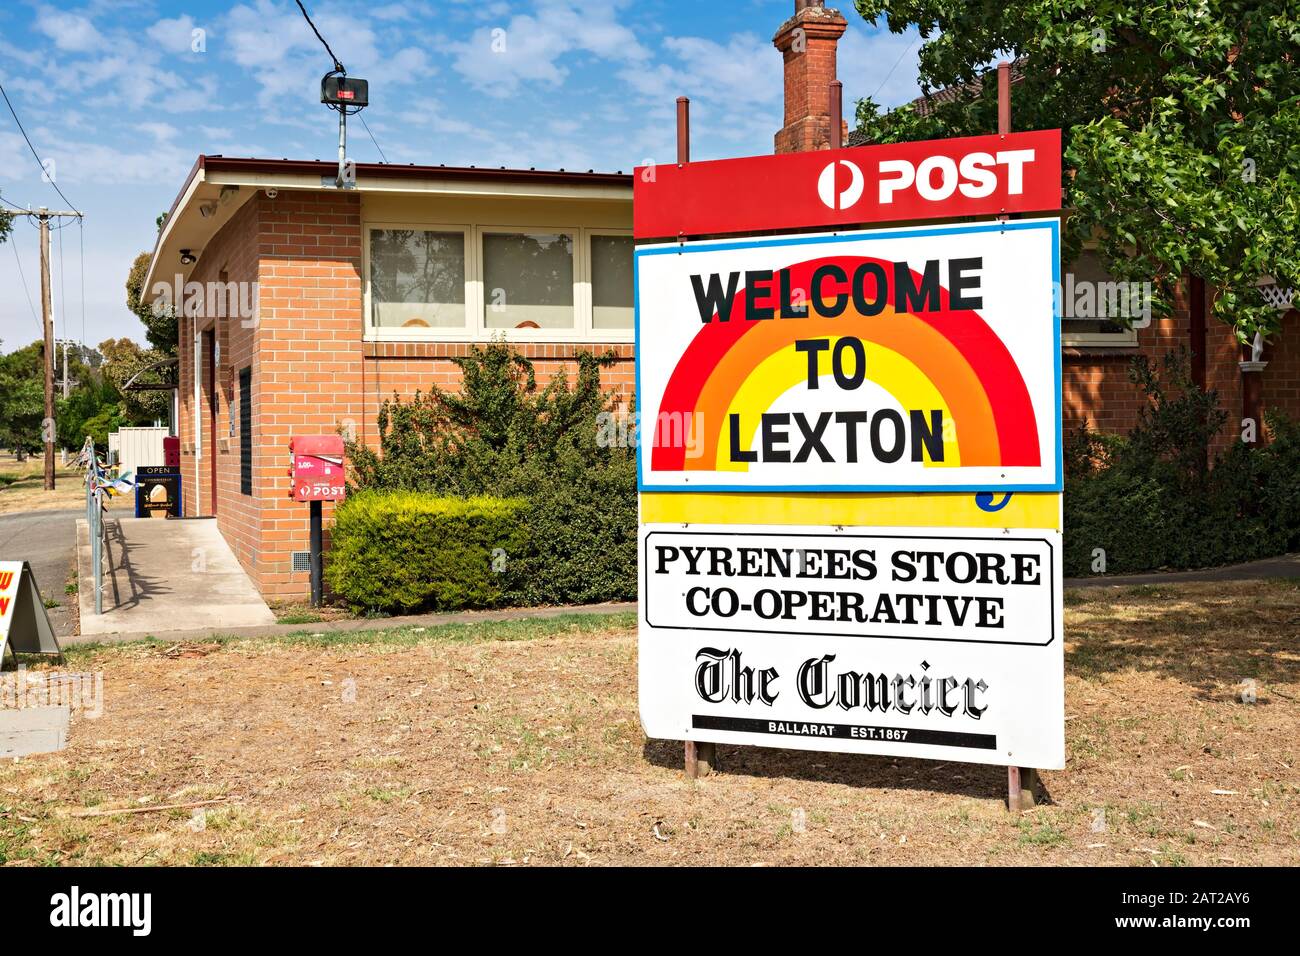 Lexton Australie / Australie Bureau De Poste Et Magasin Général À Lexton Victoria Australie. Lexton est une petite ville située à environ 160 kilomètres au nord-ouest Banque D'Images